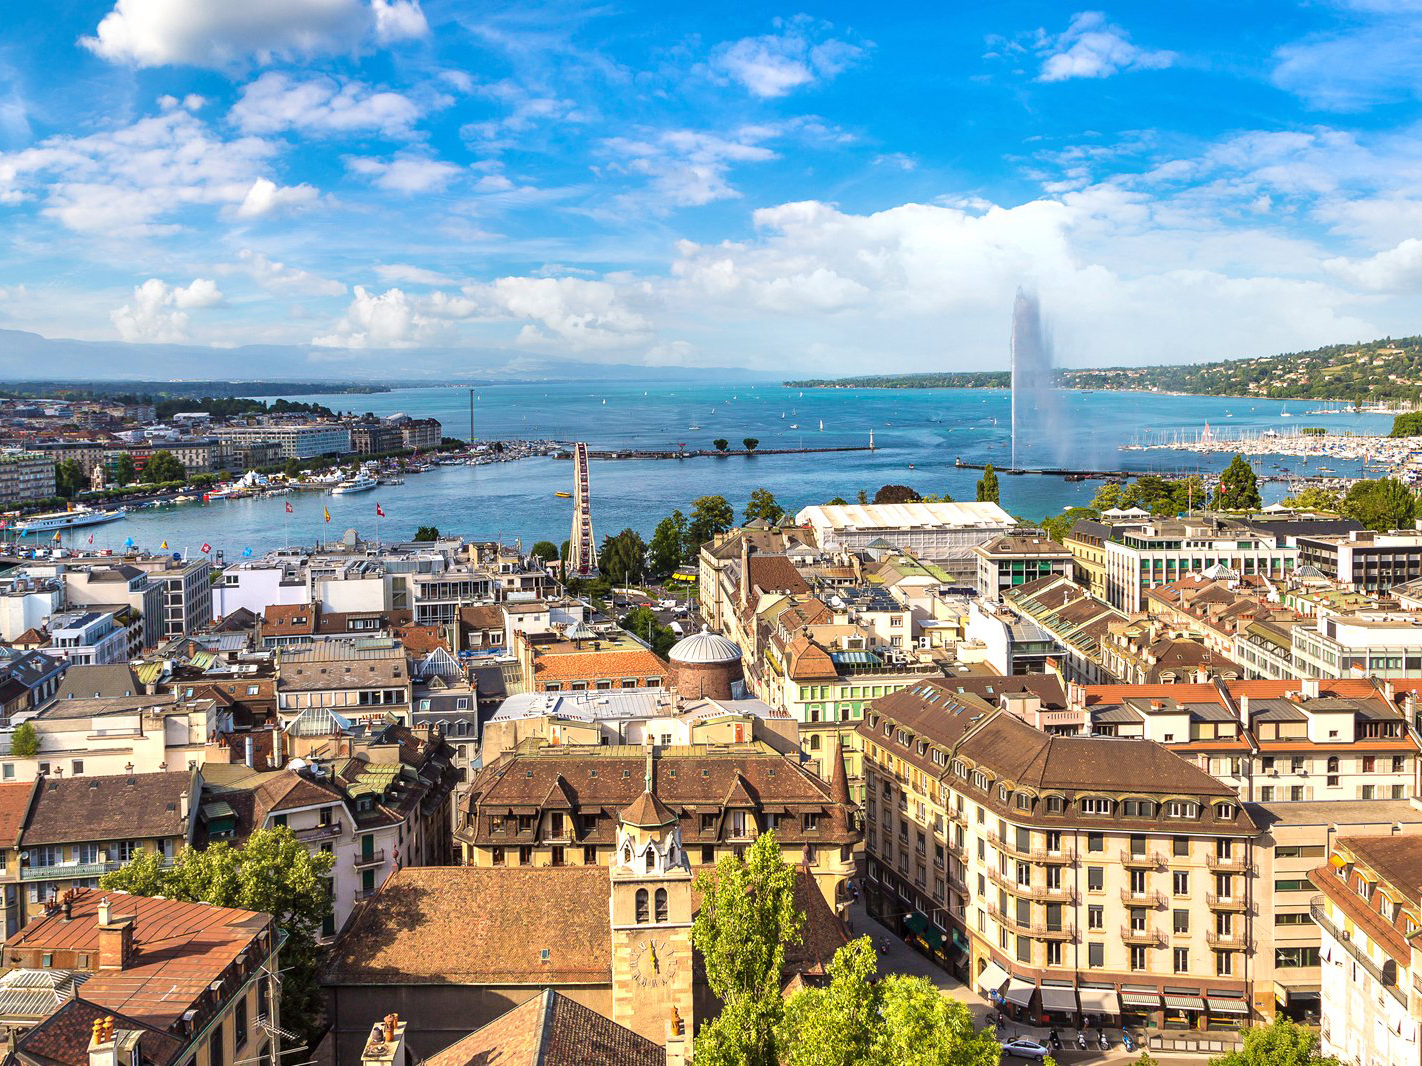 Best Destination for First Europe Trip - Geneva, Switzerland